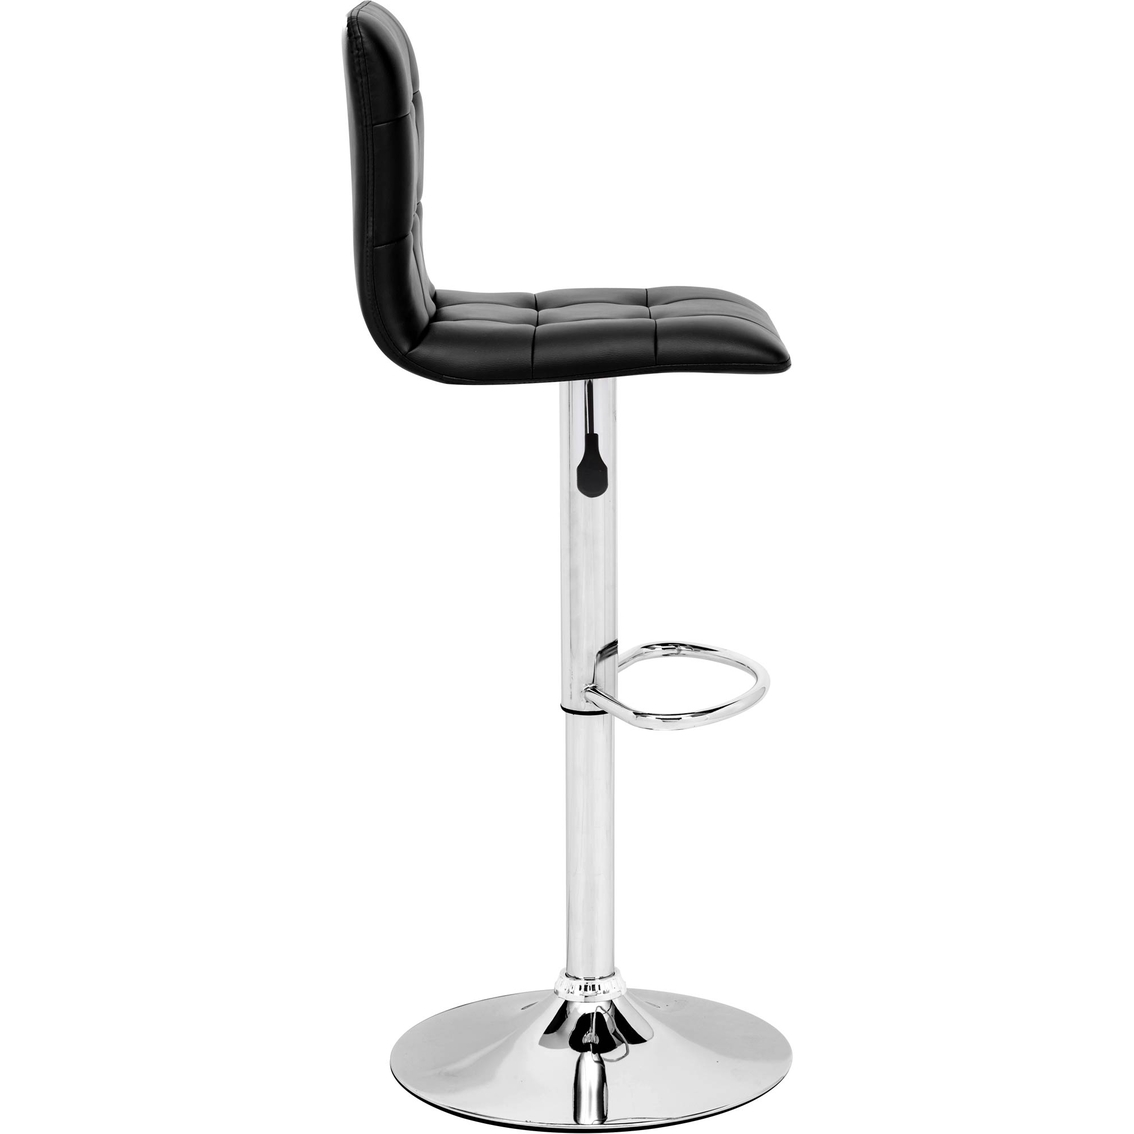 Zuo Modern Oxygen Bar Chair - Image 3 of 4